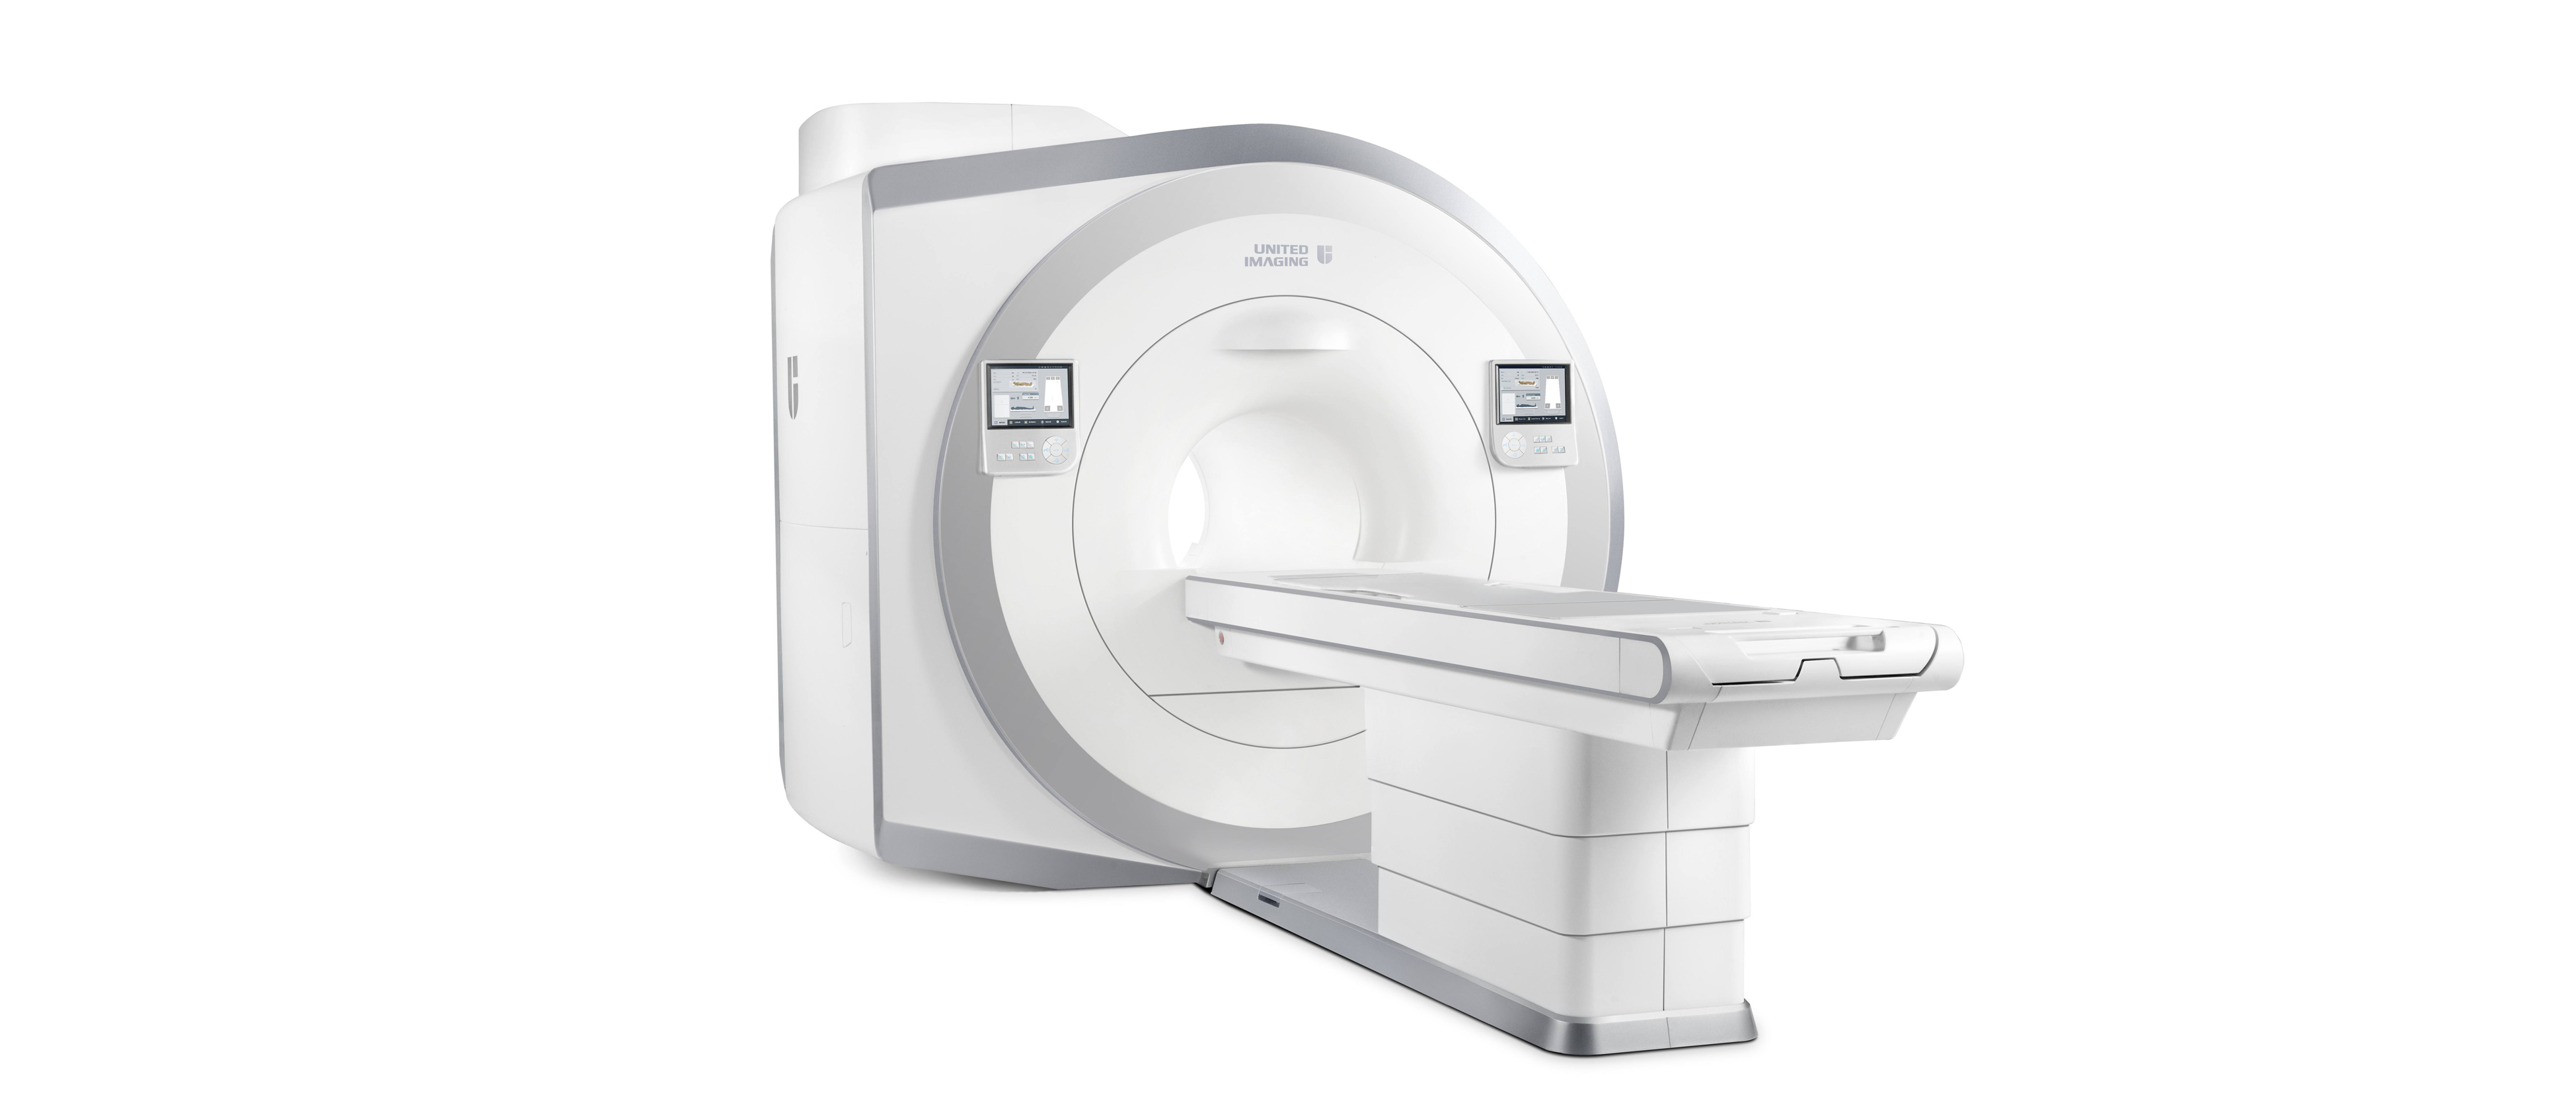 核磁共振(MRI)常见故障两例